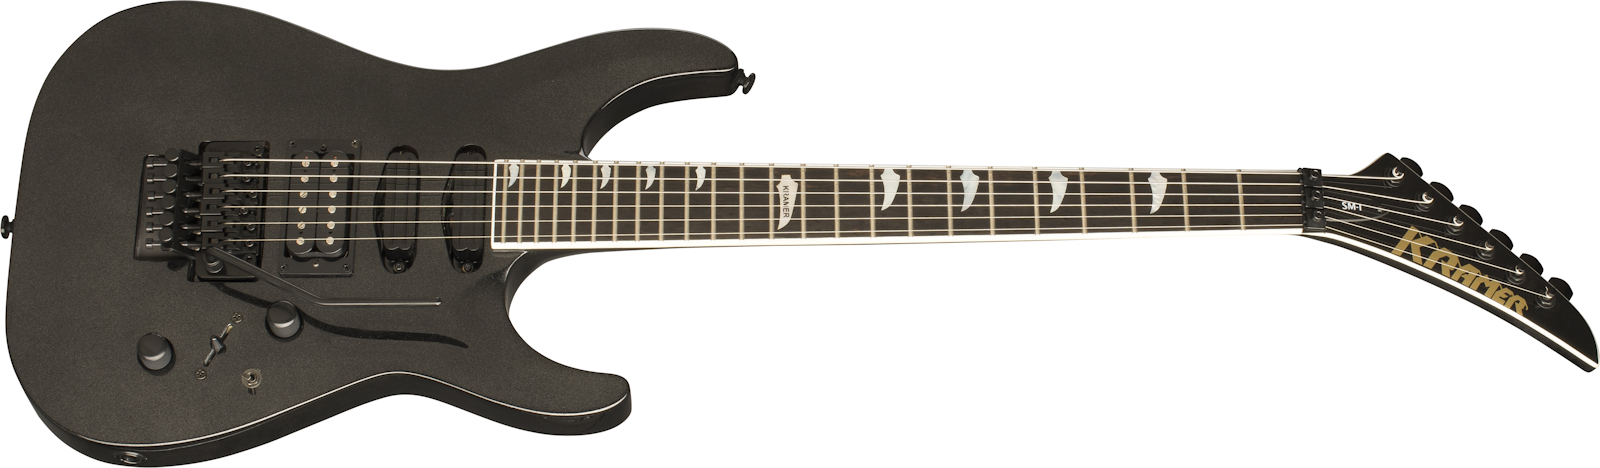 Kramer Guitars SM-1 elektrisk gitar